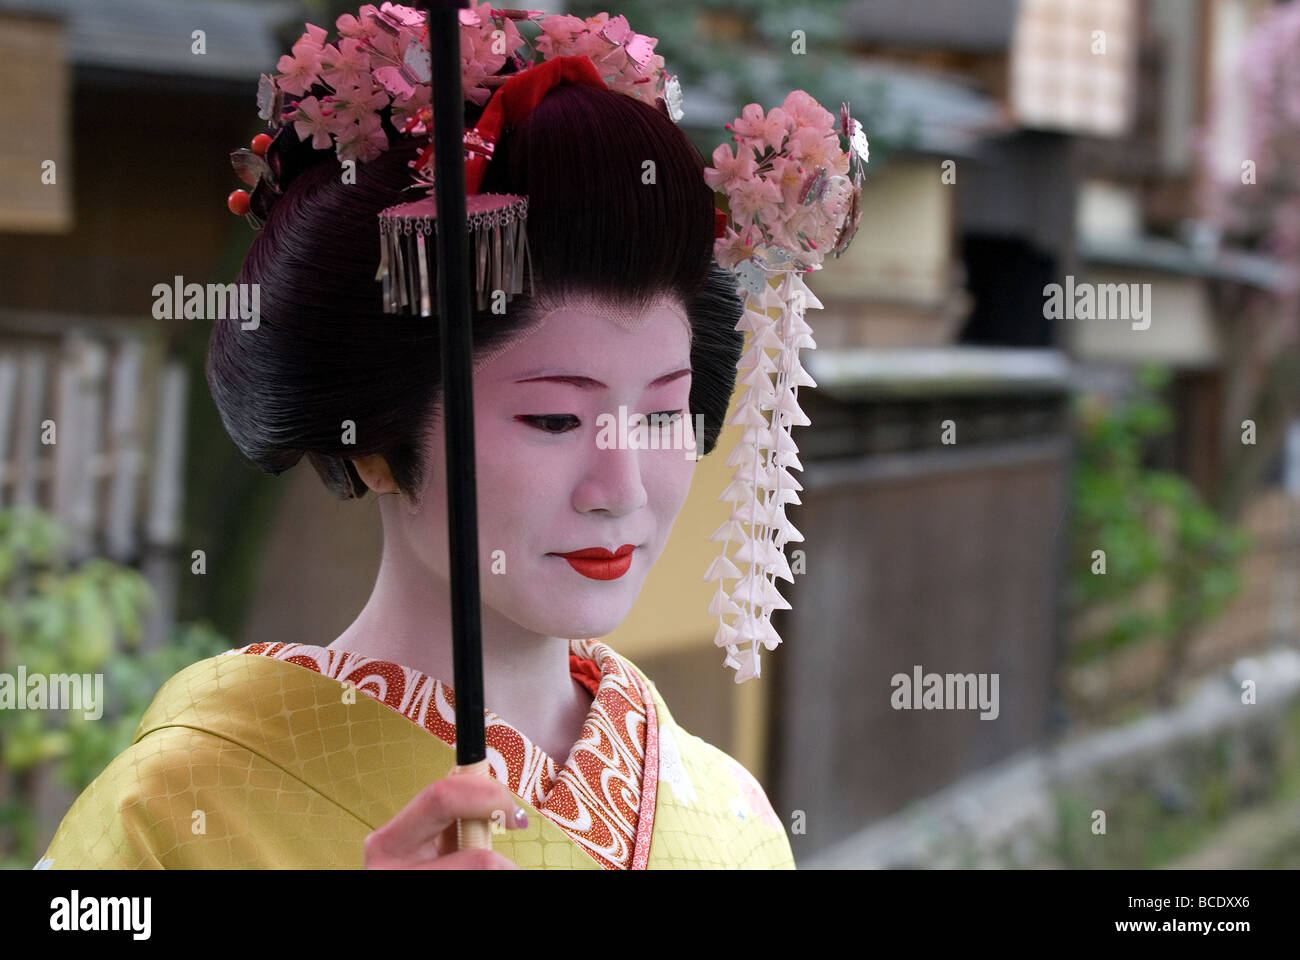 Tourisme Une femme habillée en geisha ou maiko apprenti avec spring Kanzashi orné de décorations dans les cheveux a un moment de calme Banque D'Images